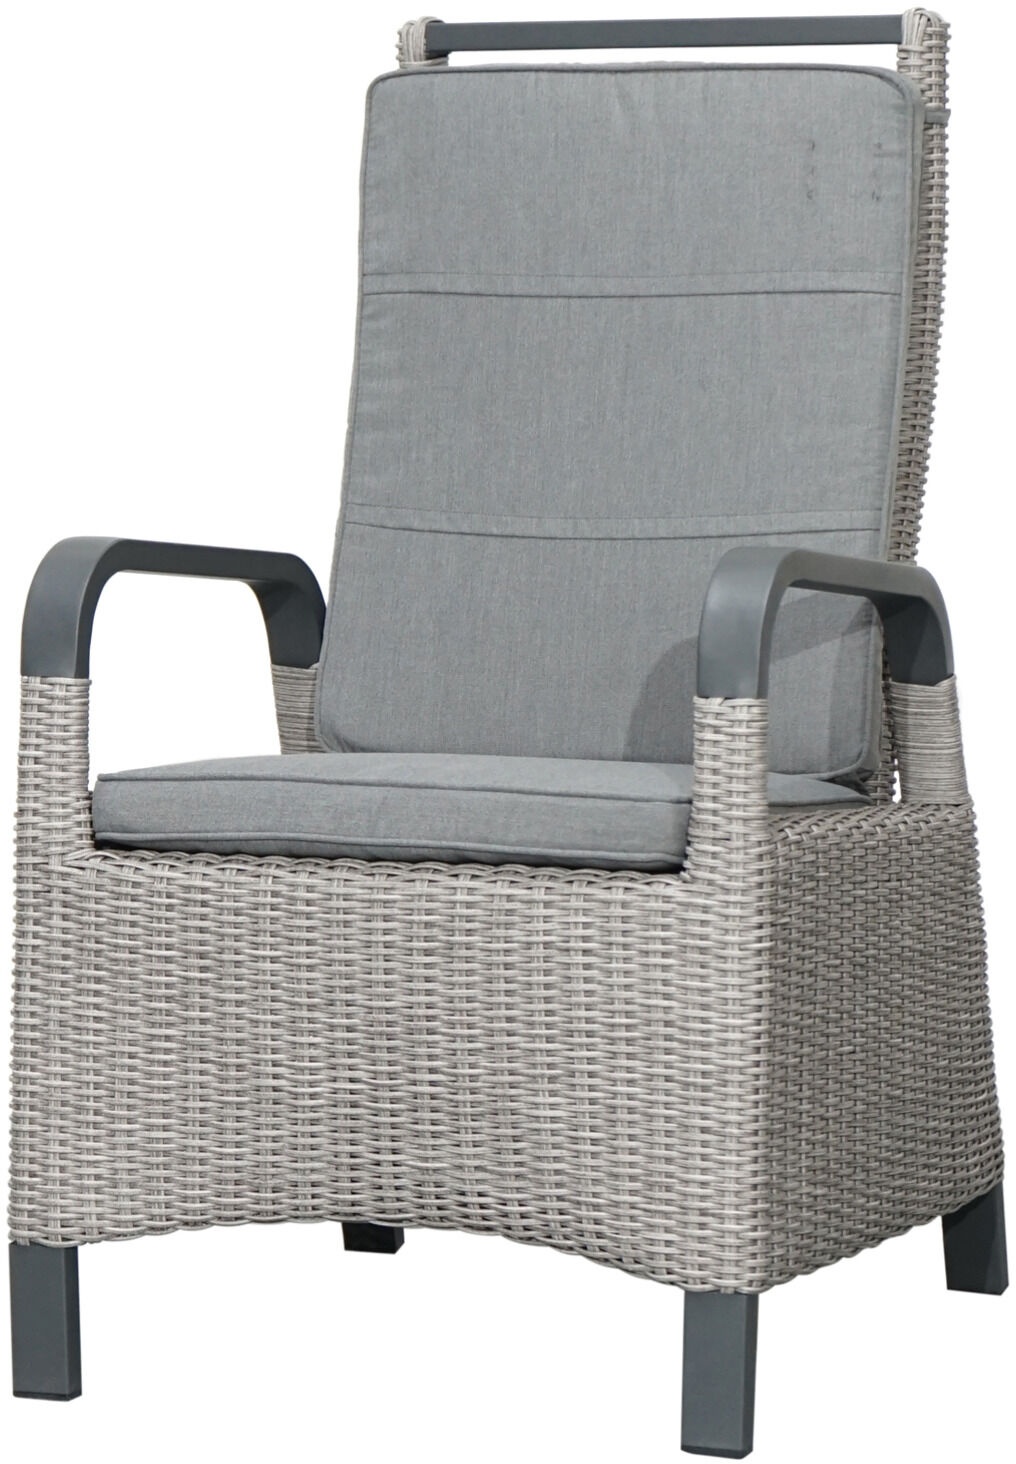 Ploß Caldero Design-Diningsessel, Grau, Aluminium/Polyrattan, 76x60x106 cm, mit Sitz- und Rückenpolster, Witterungsbeständig